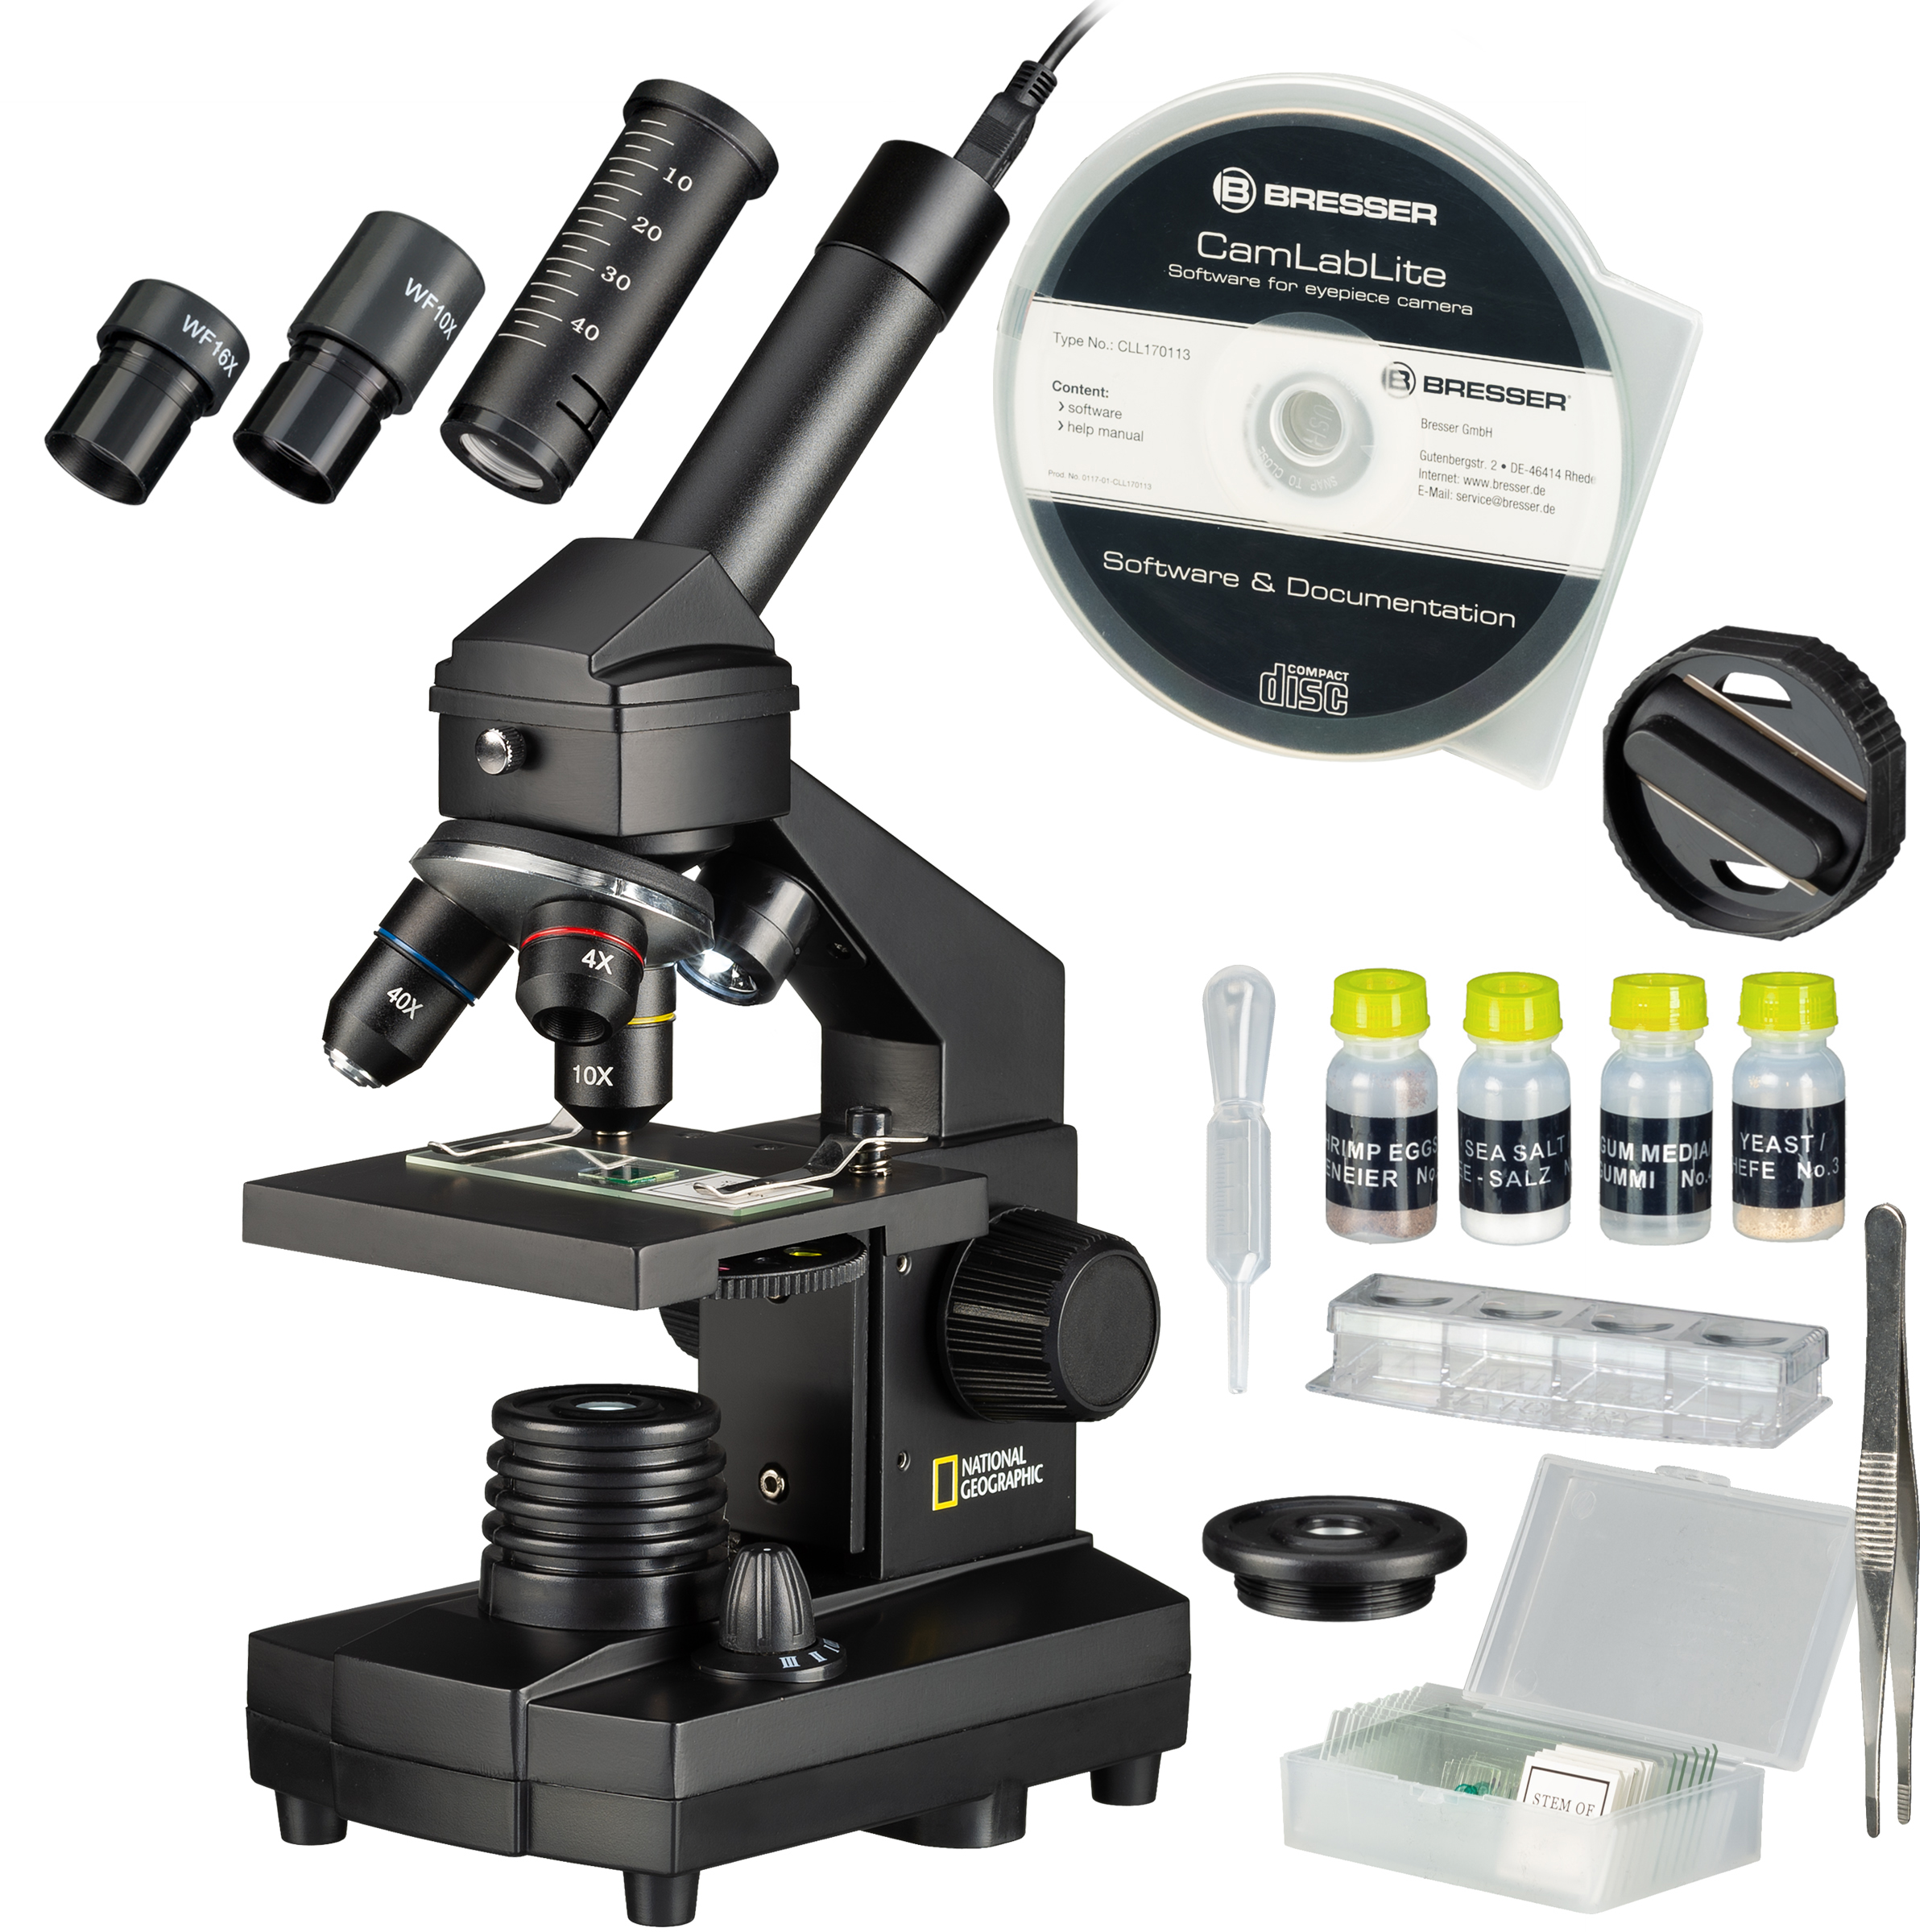 Microscopio NATIONAL GEOGRAPHIC 40x-1024x (con valigetta e oculare USB)